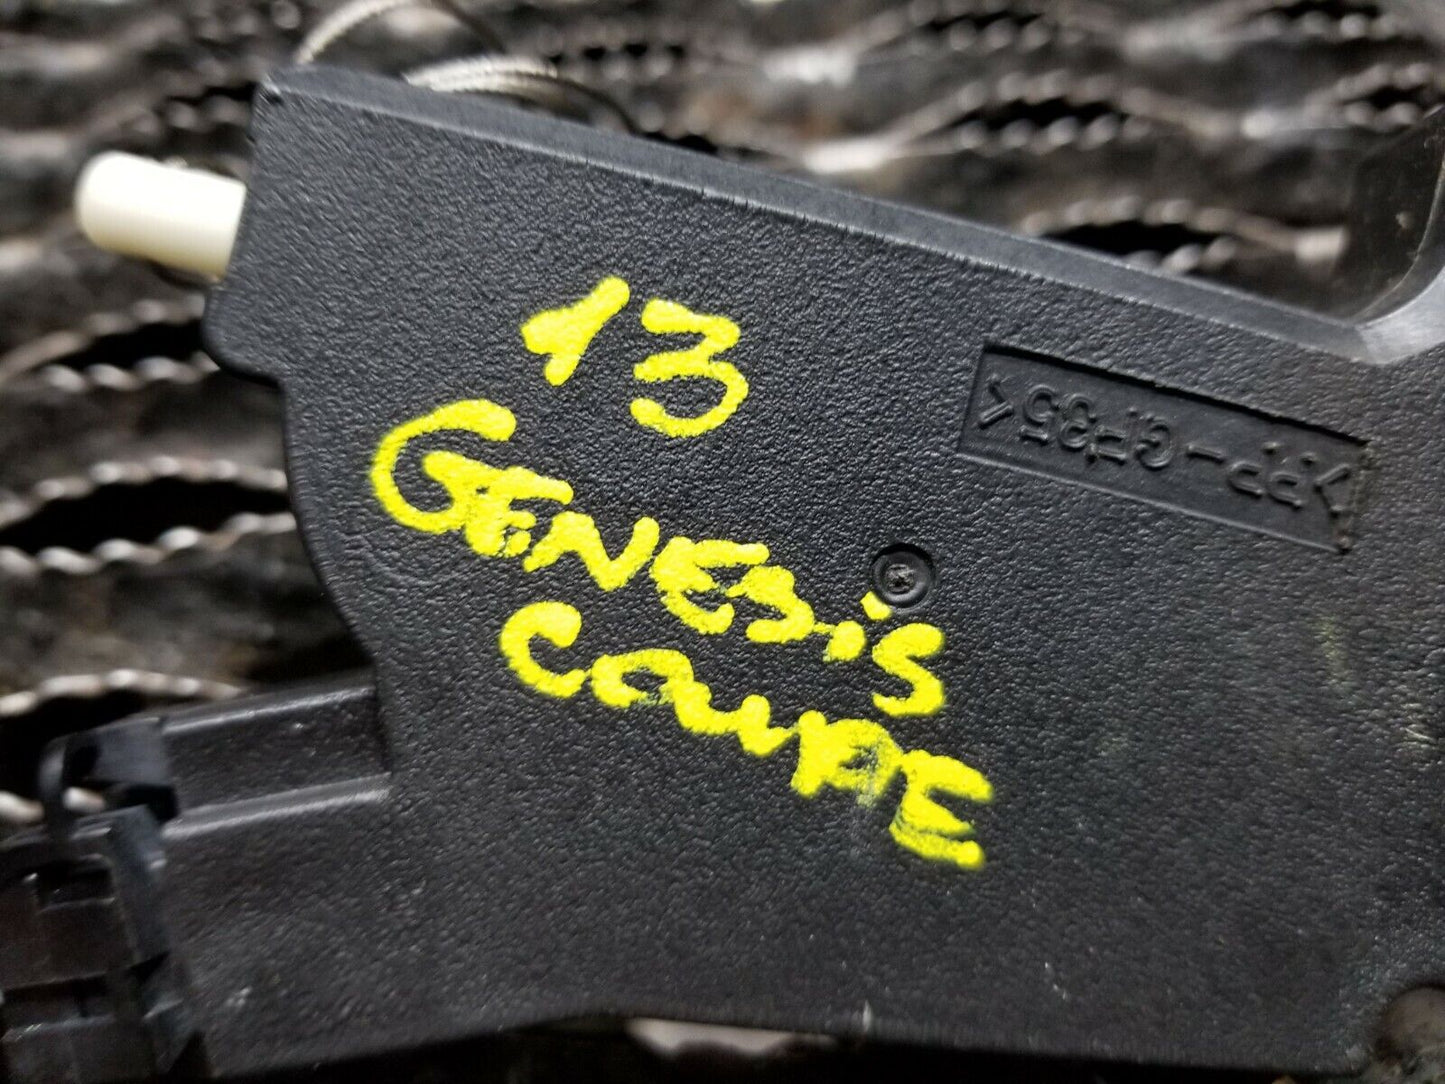 13 14 15 Genesis Coupe Fuel Tank Lock OEM 51k